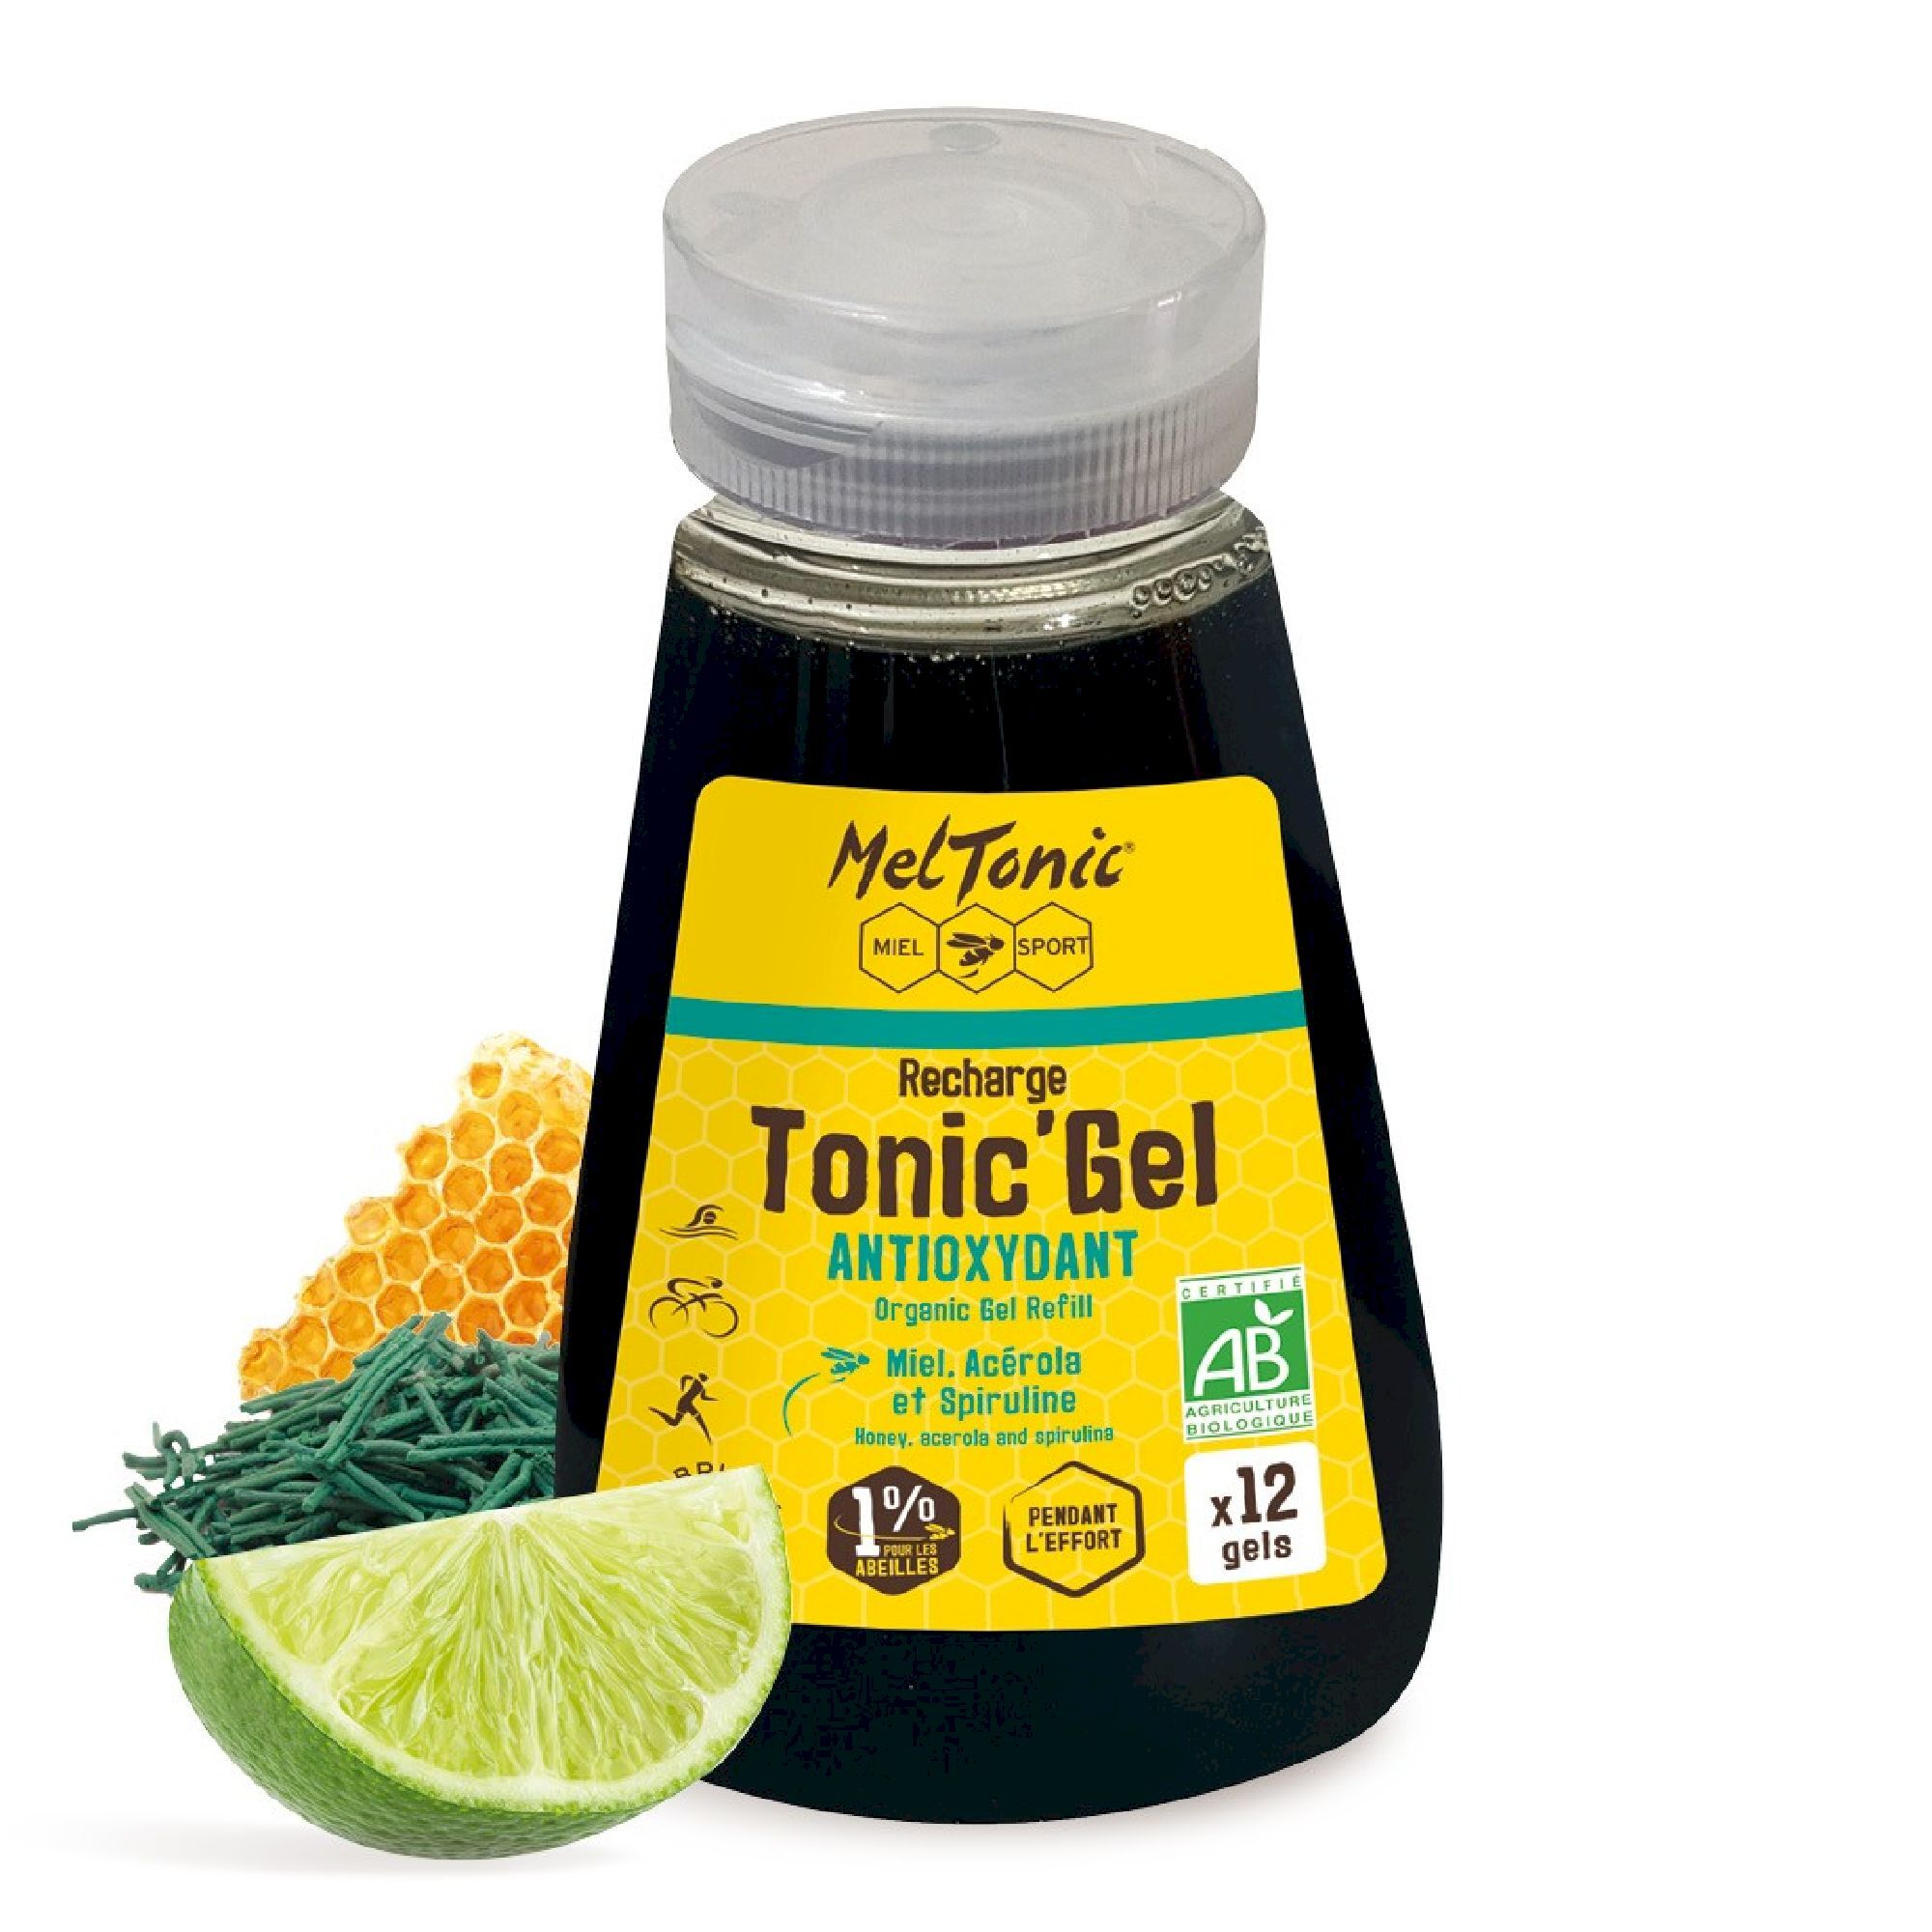 Meltonic Tonic Gel Bio Antioxydant - Recharge Eco - Gel énergétique